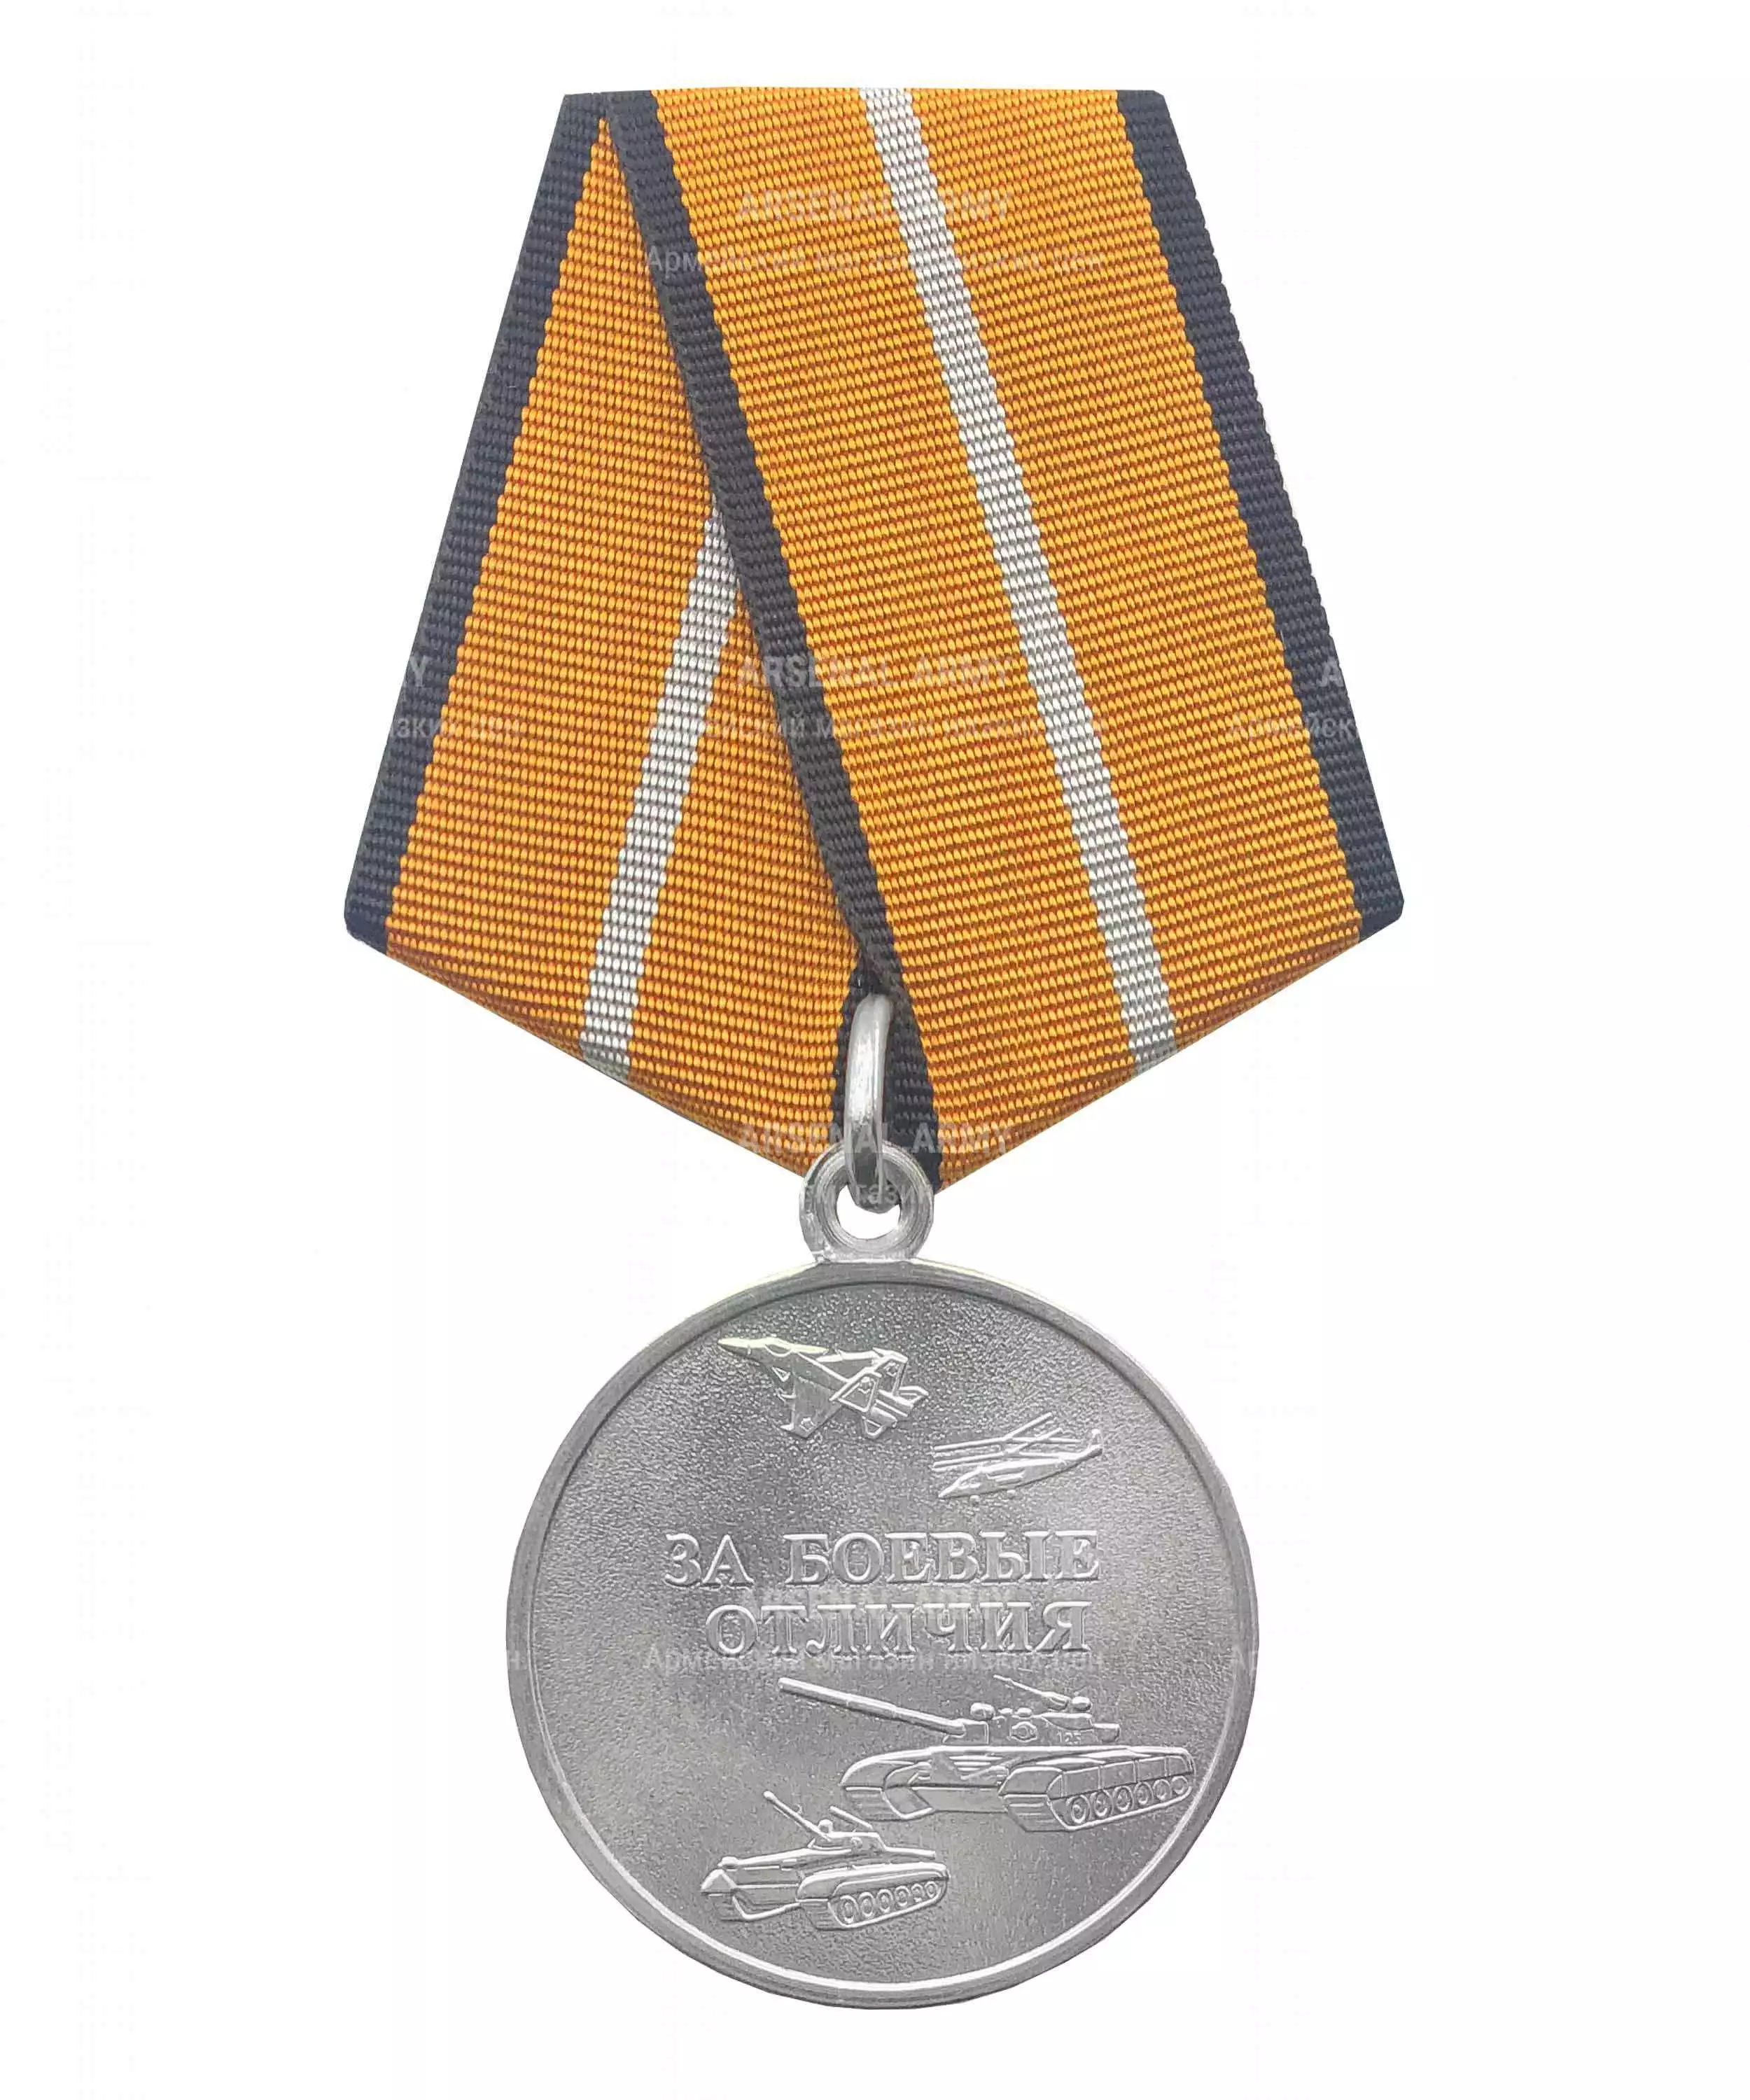 Медаль МО "За боевые отличия" — 1